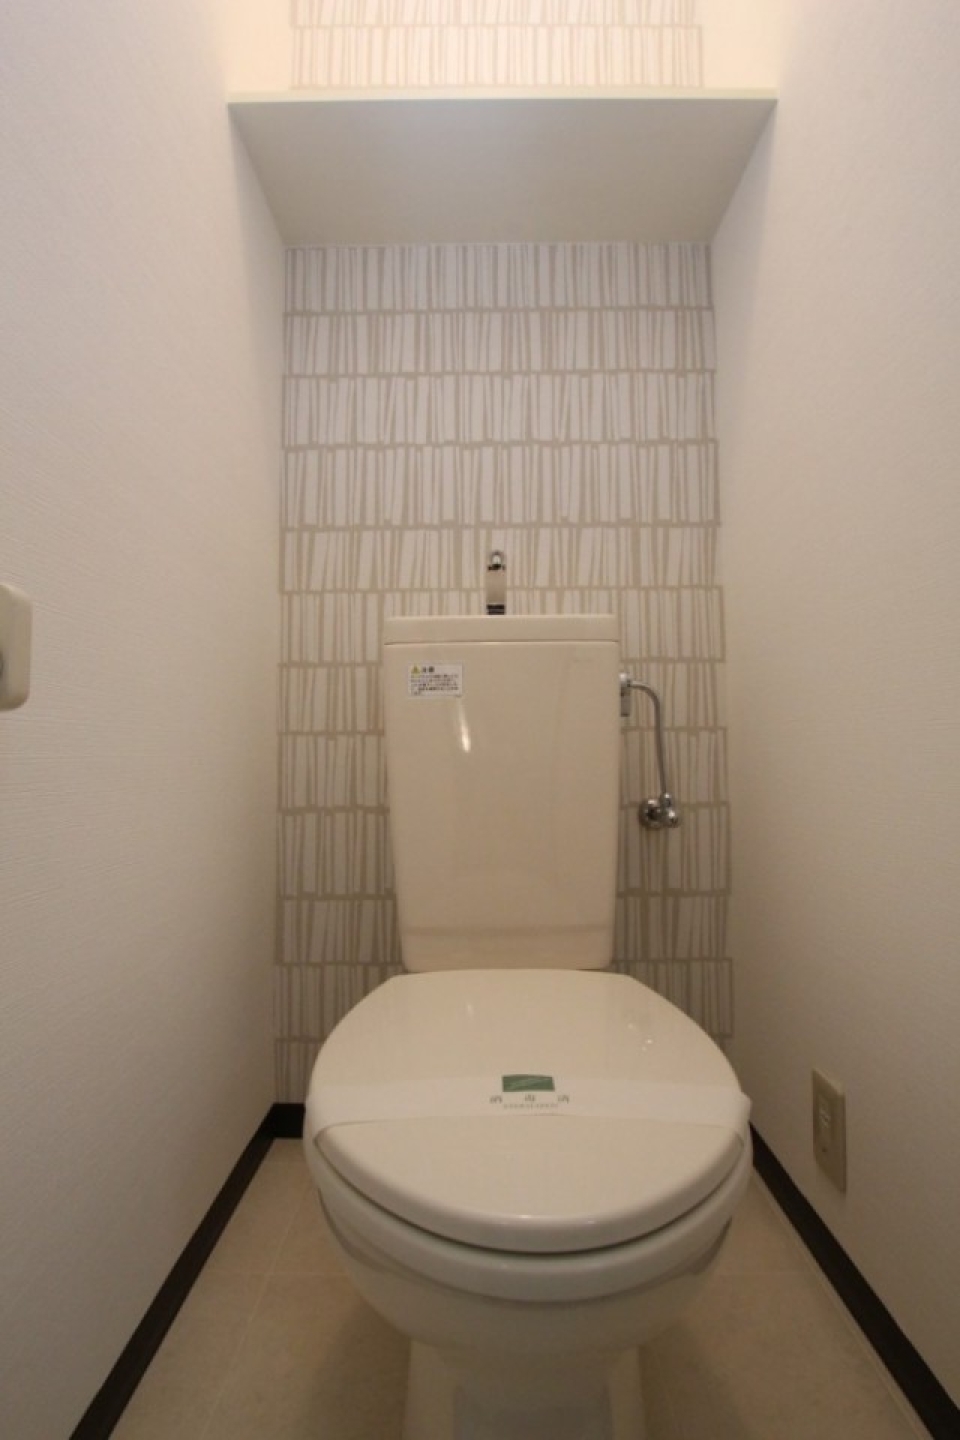 電源コンセントがありシャワートイレの設置可能。